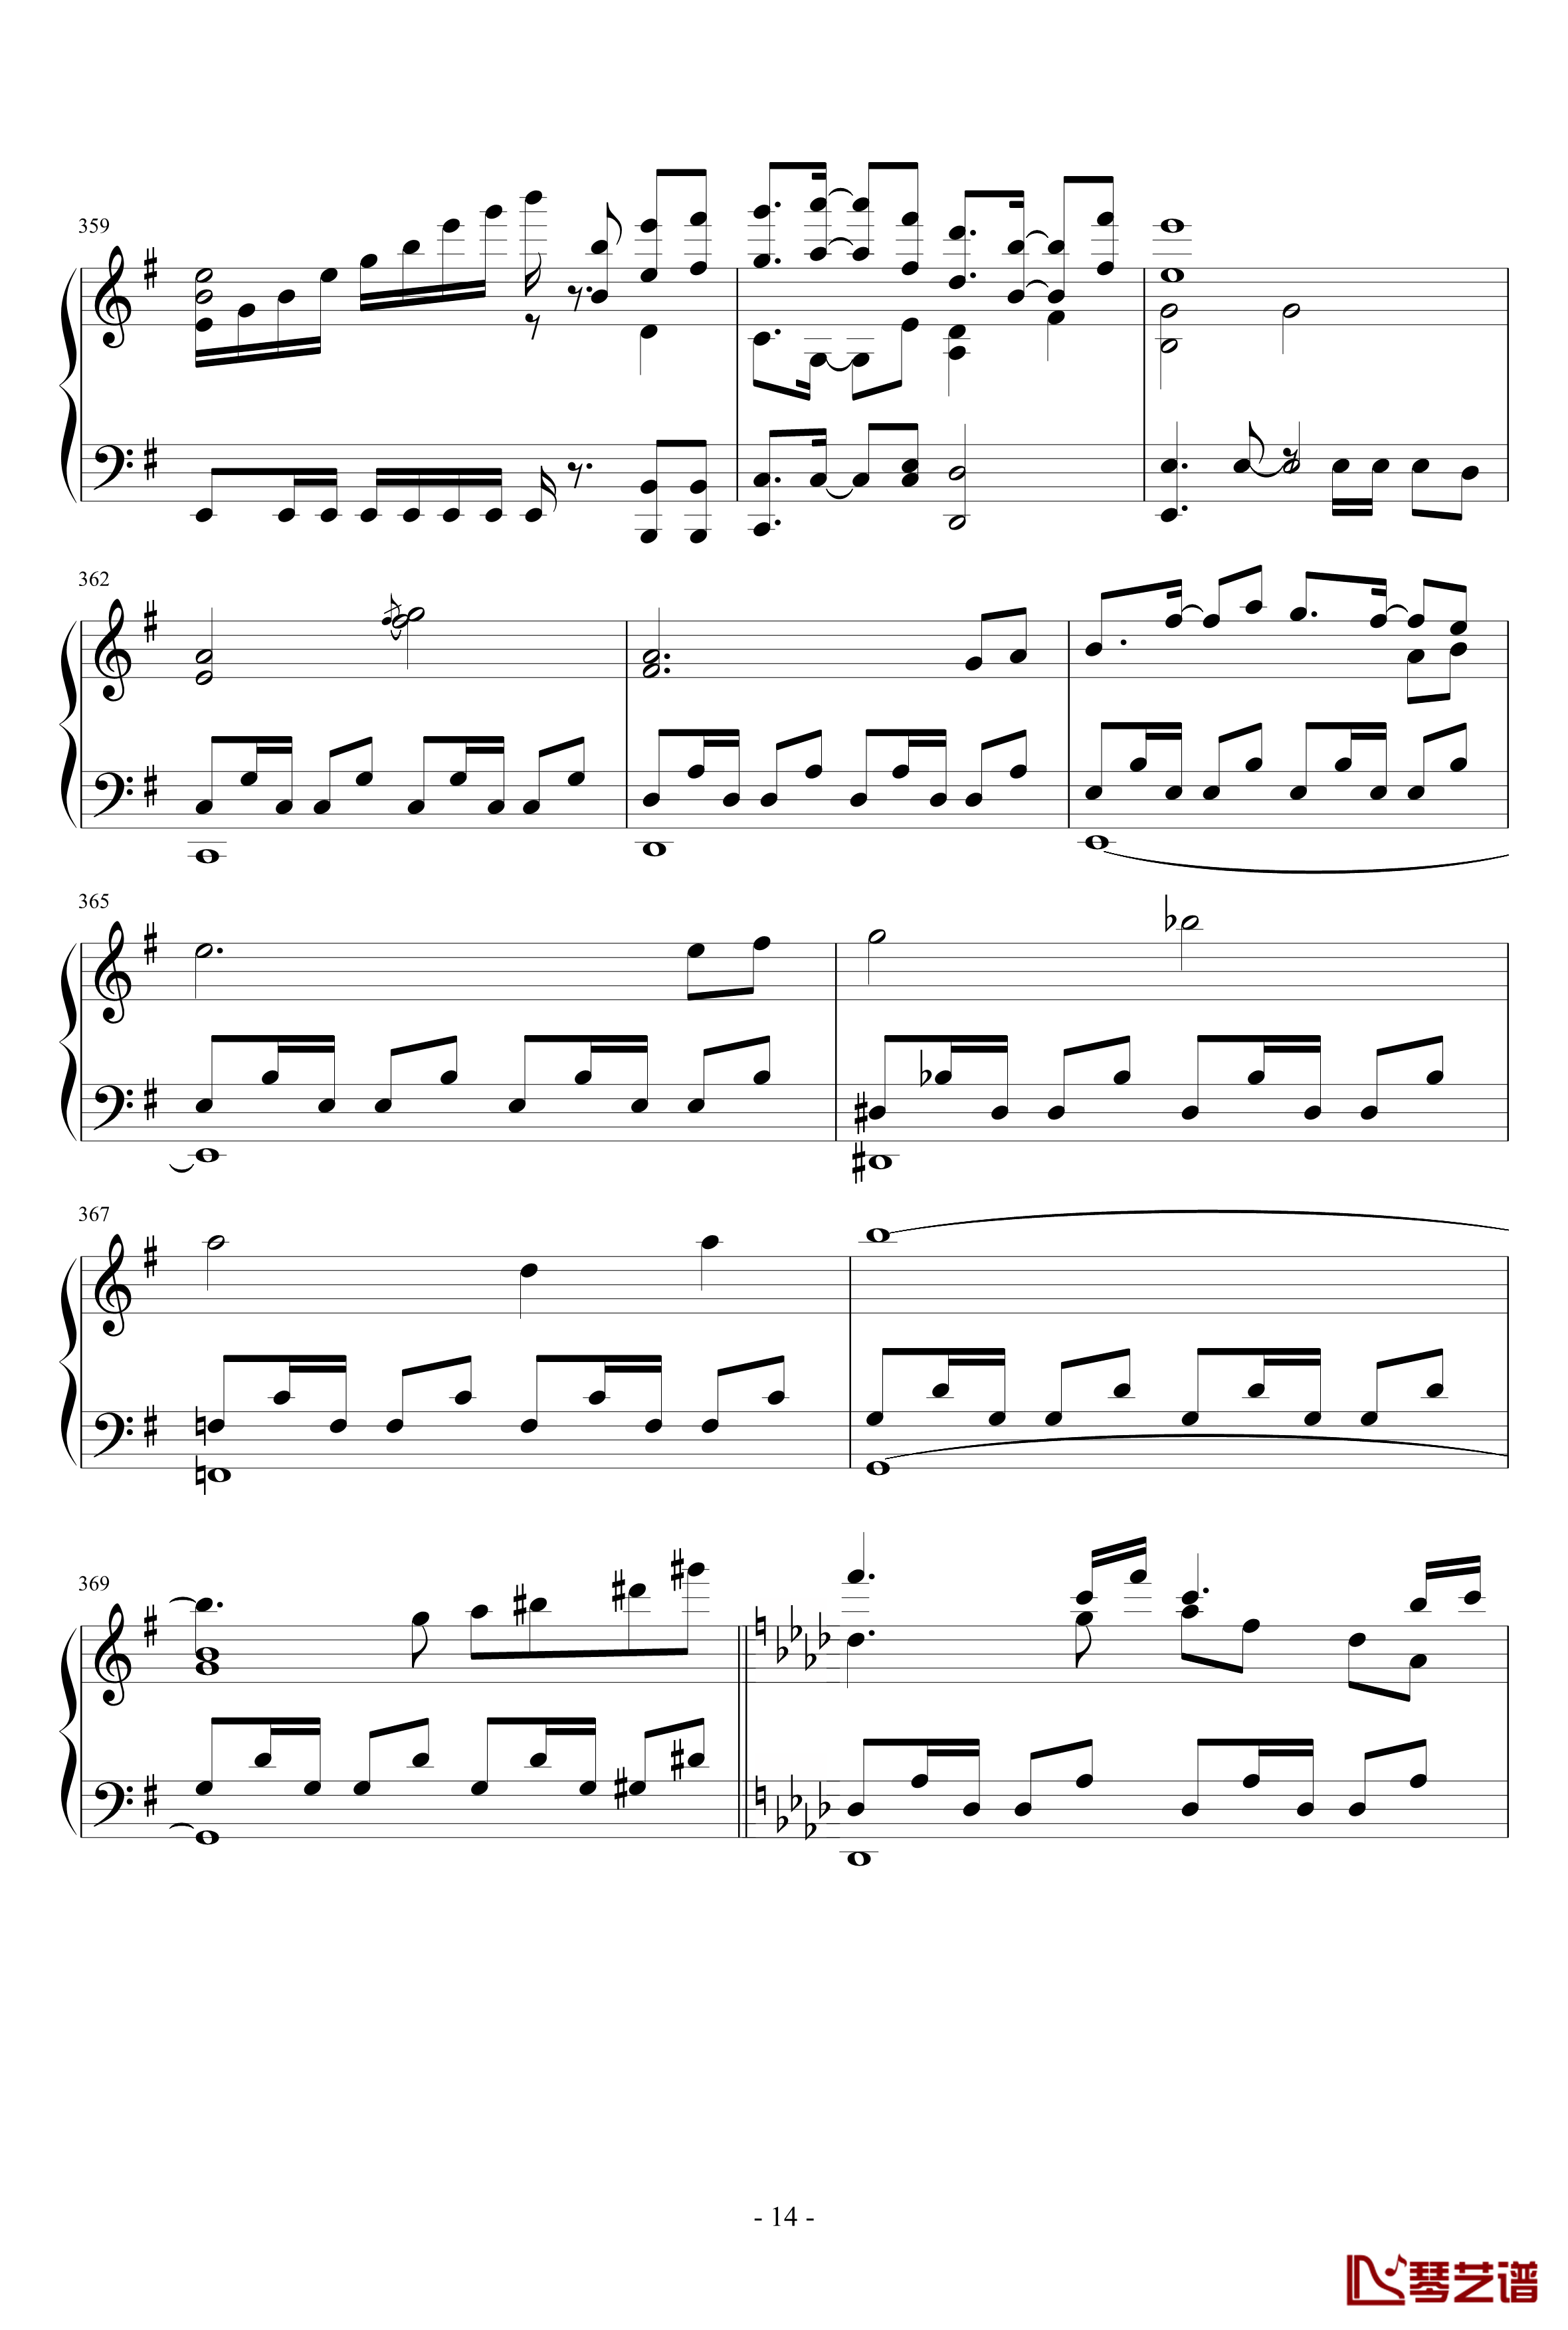 東方連奏曲II Pianoforte钢琴谱-第二部分-东方project14